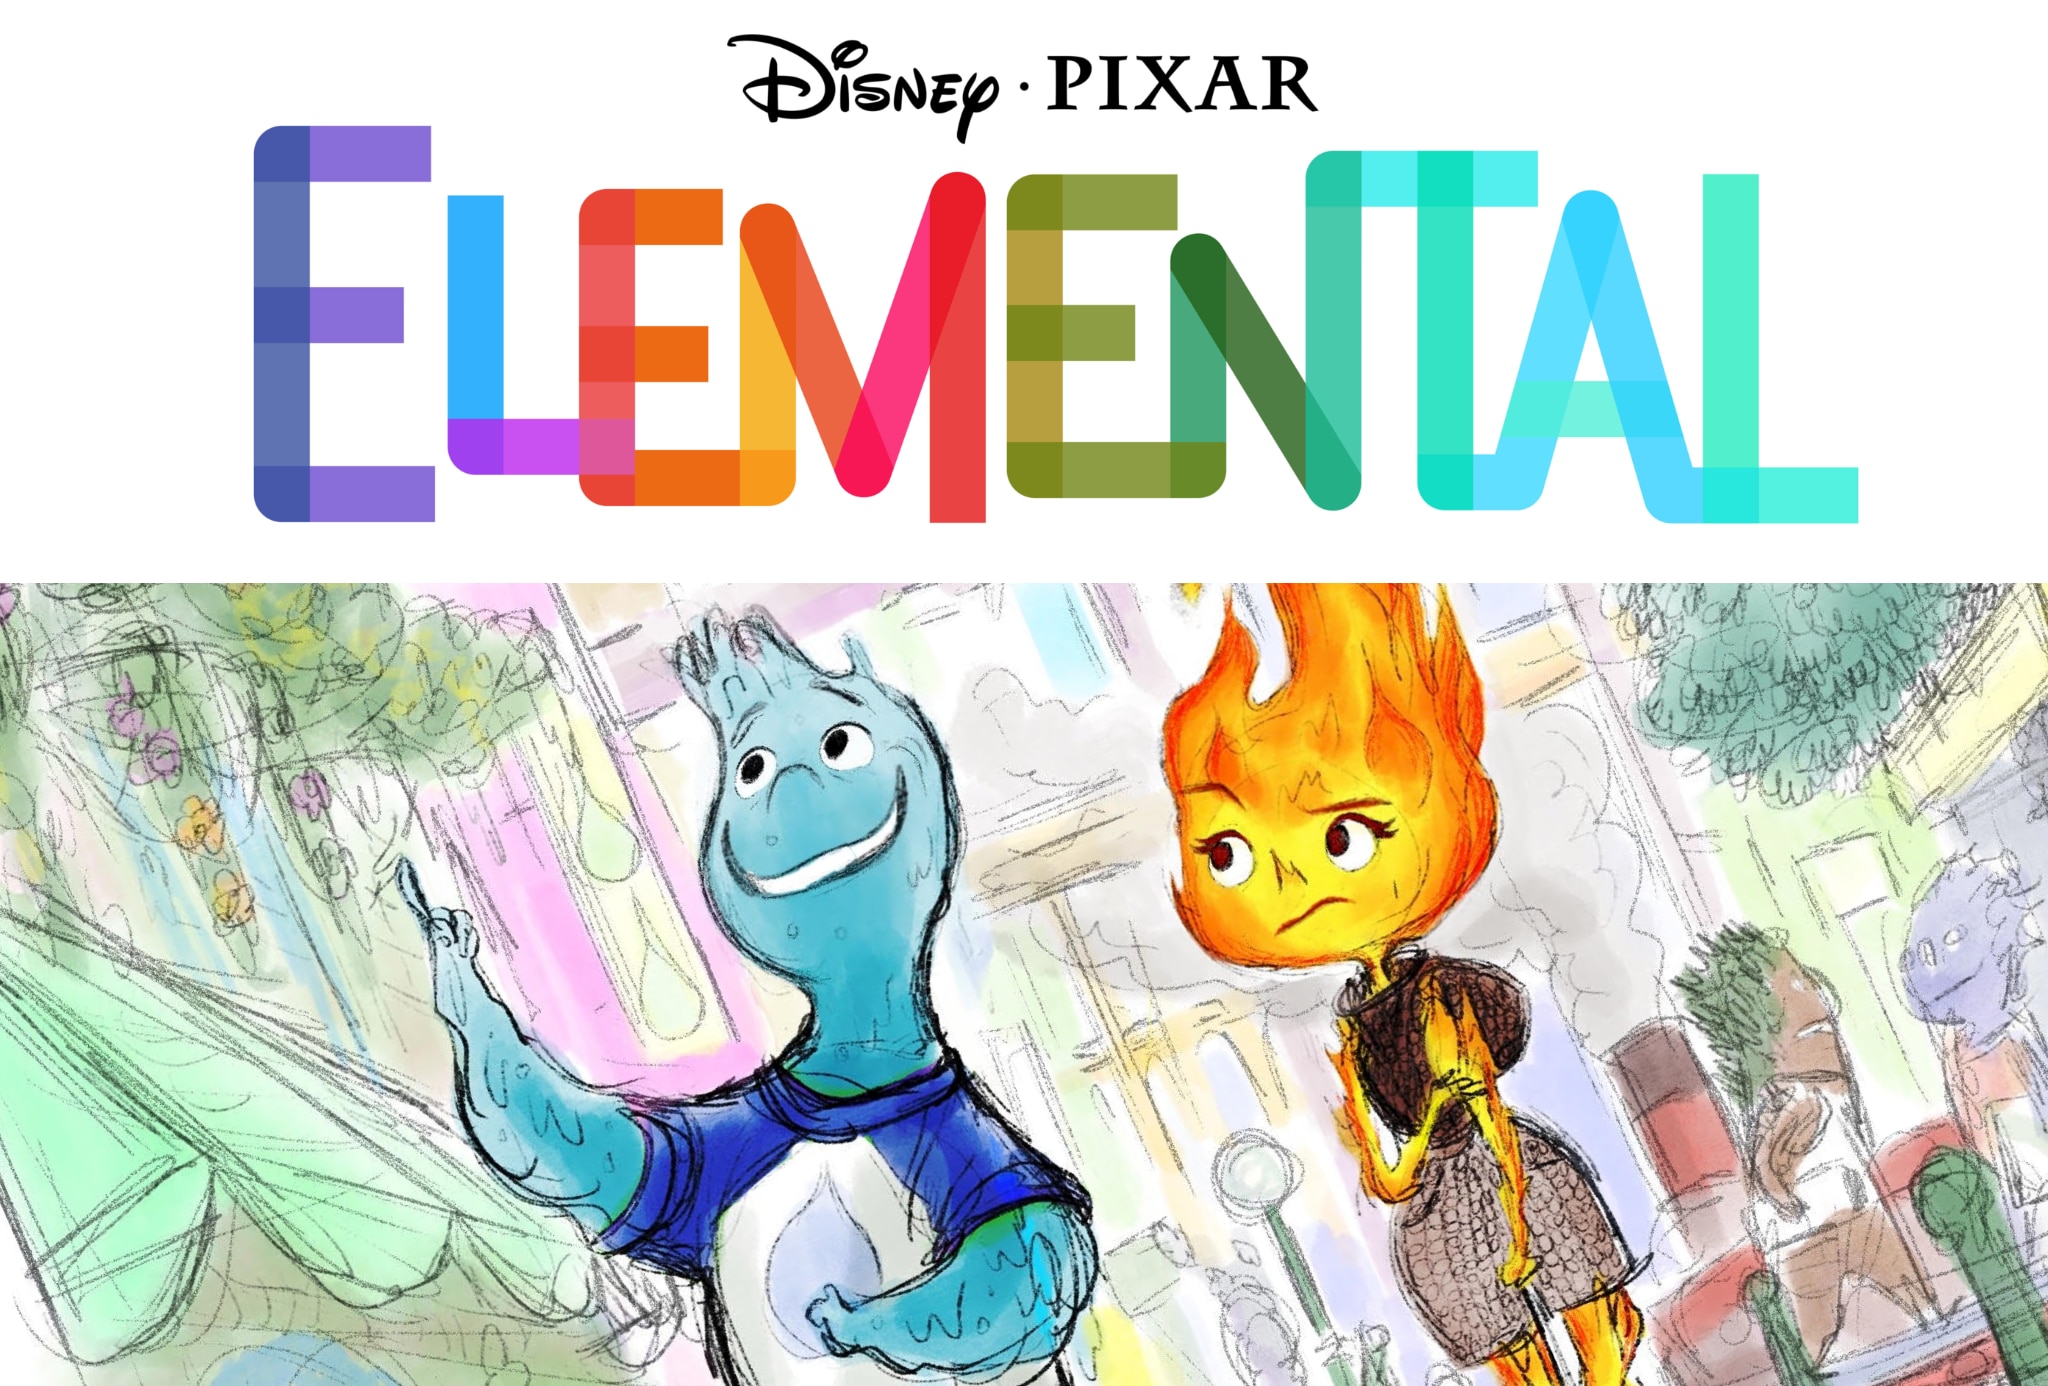 Pixar's Movie "Elemental" Release Date